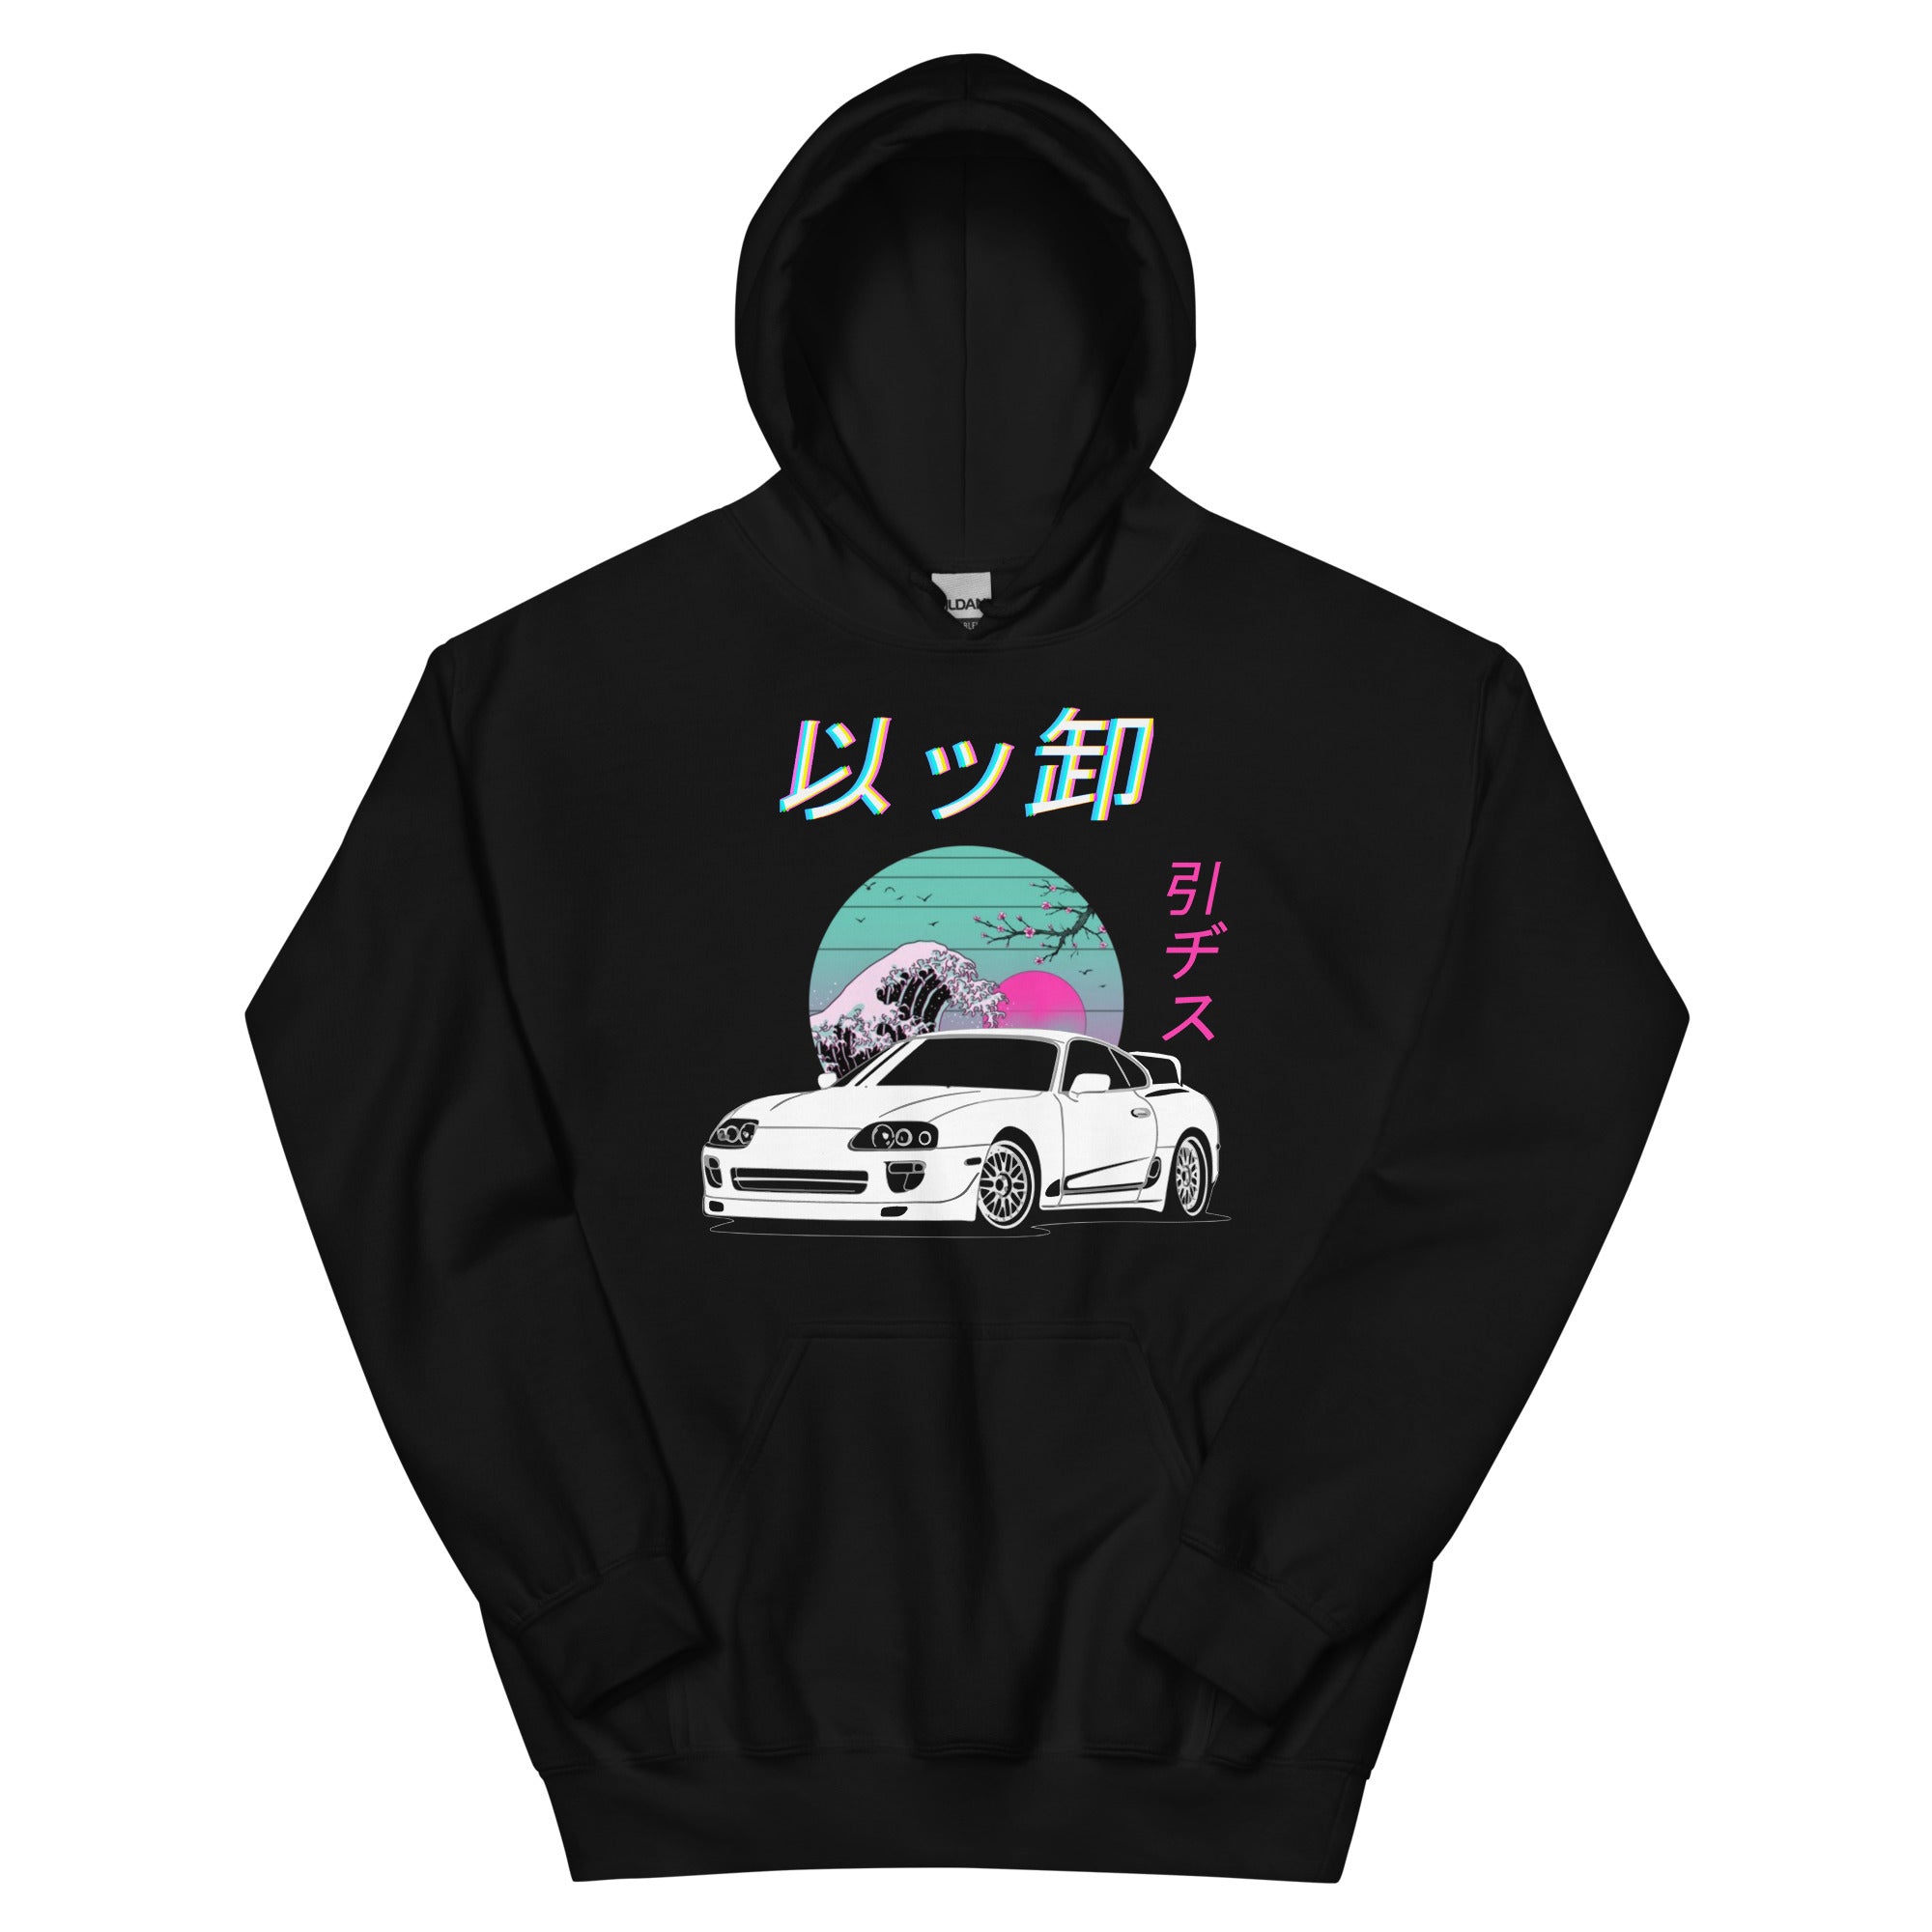 1990s Supra JDM Vaporwave Aesthetic Drift Street Racing Unisex Hoodie Sweatshirt